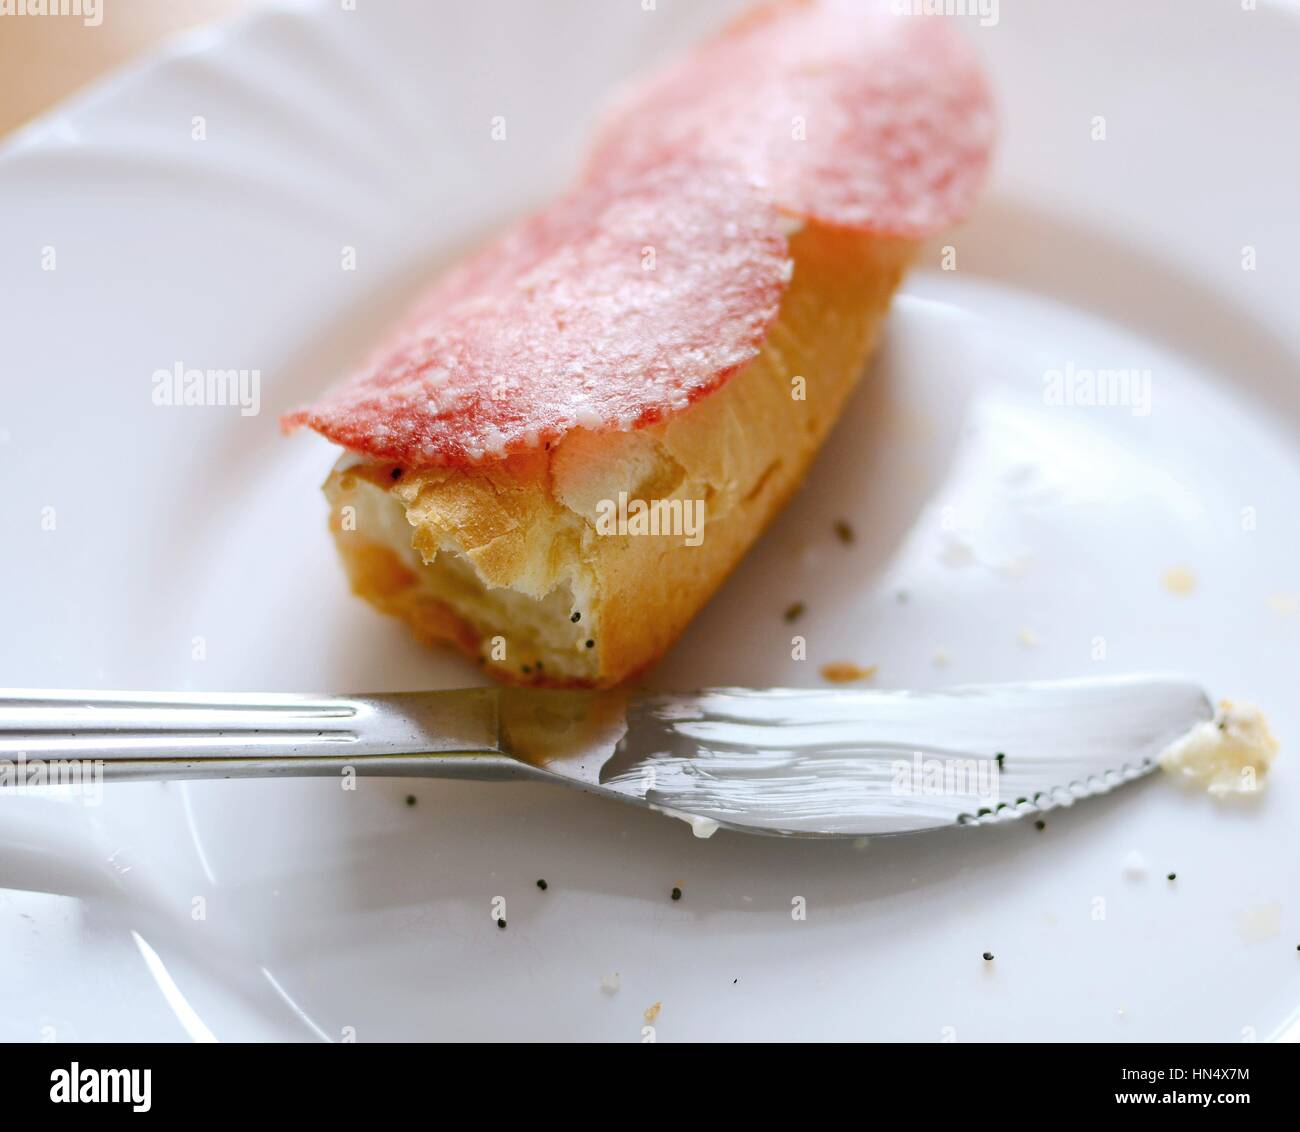 Überbleibsel der Salami Brot Brötchen mit Biss fehlt und Messer auf einem weißen Teller liegen. Stockfoto